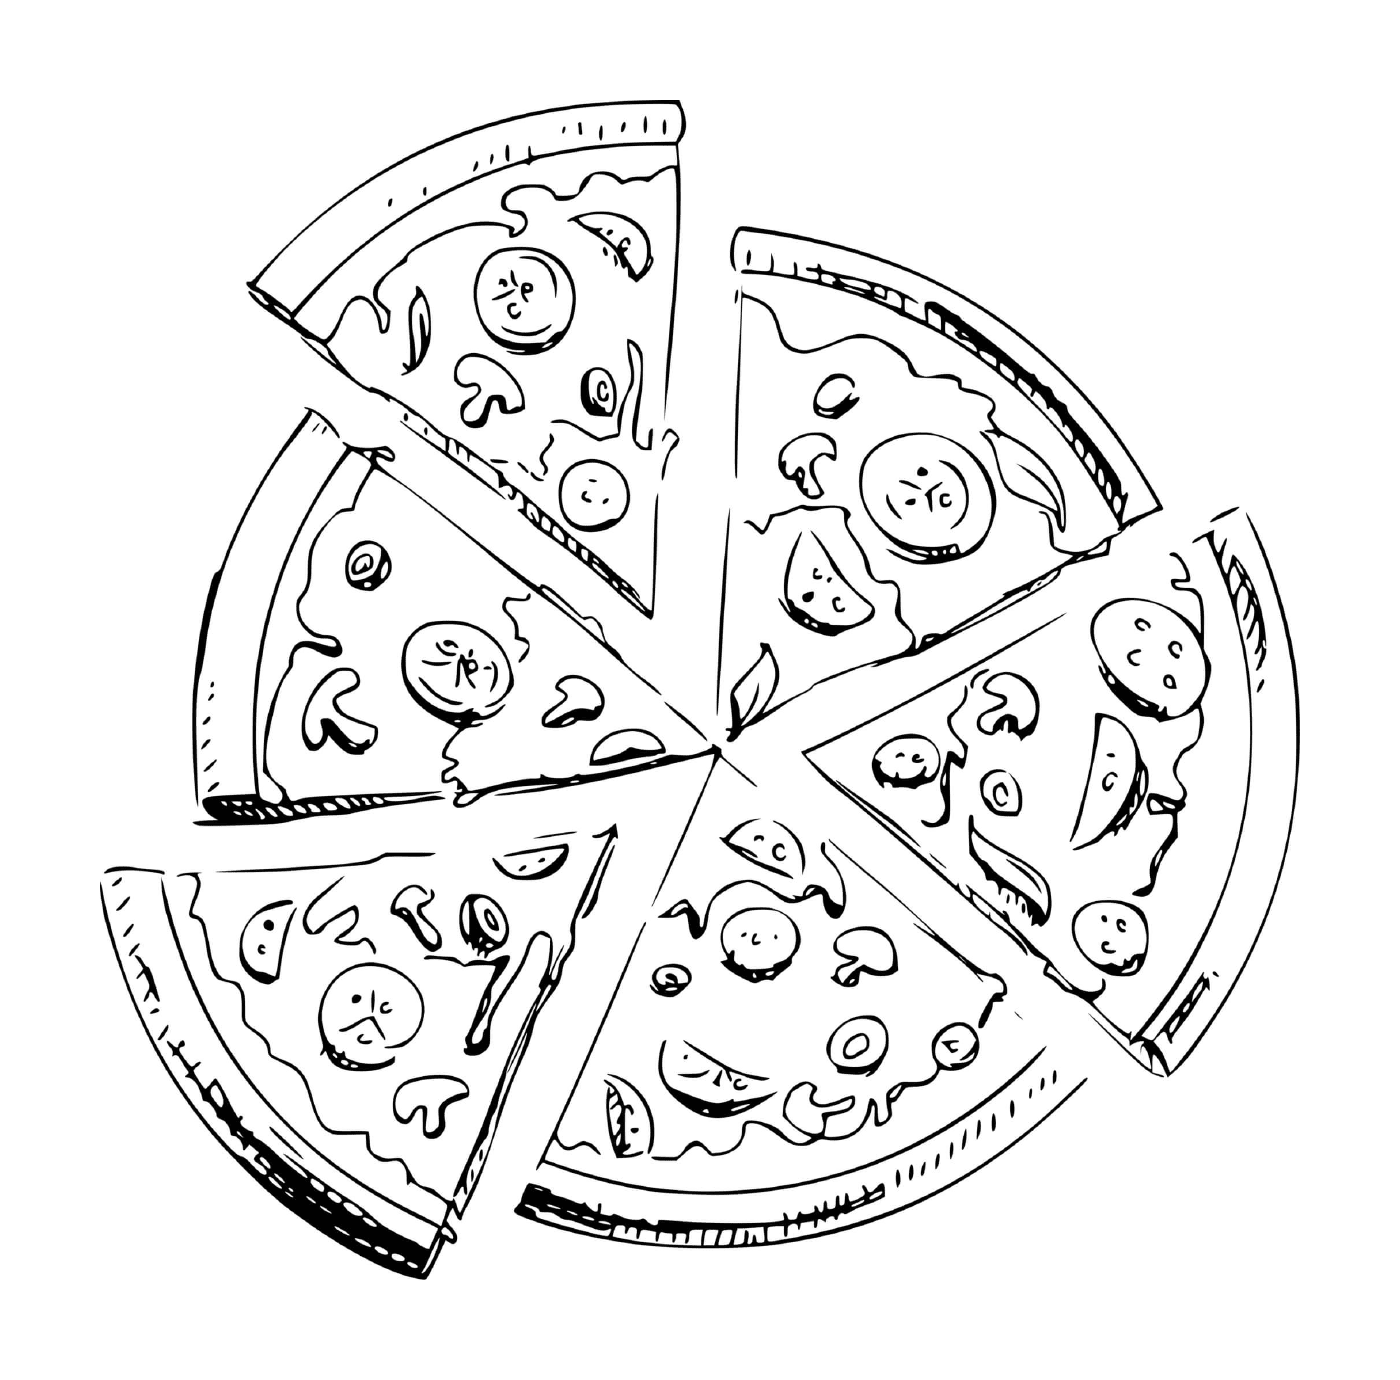  ٦,٦ قطعة من البيتزا 